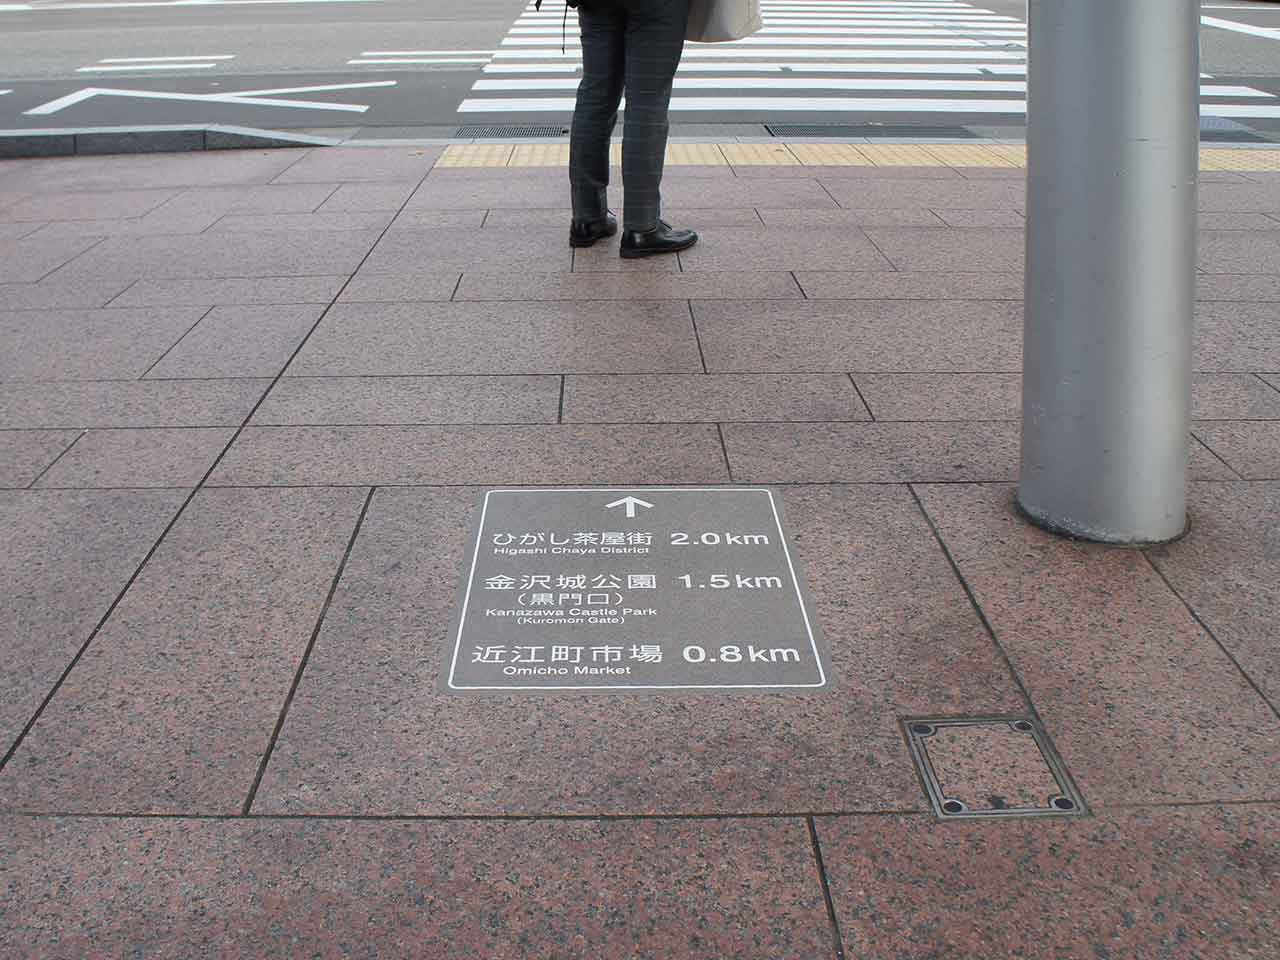 誘導サイン 金沢周遊まち歩き 路面標示 社会実験